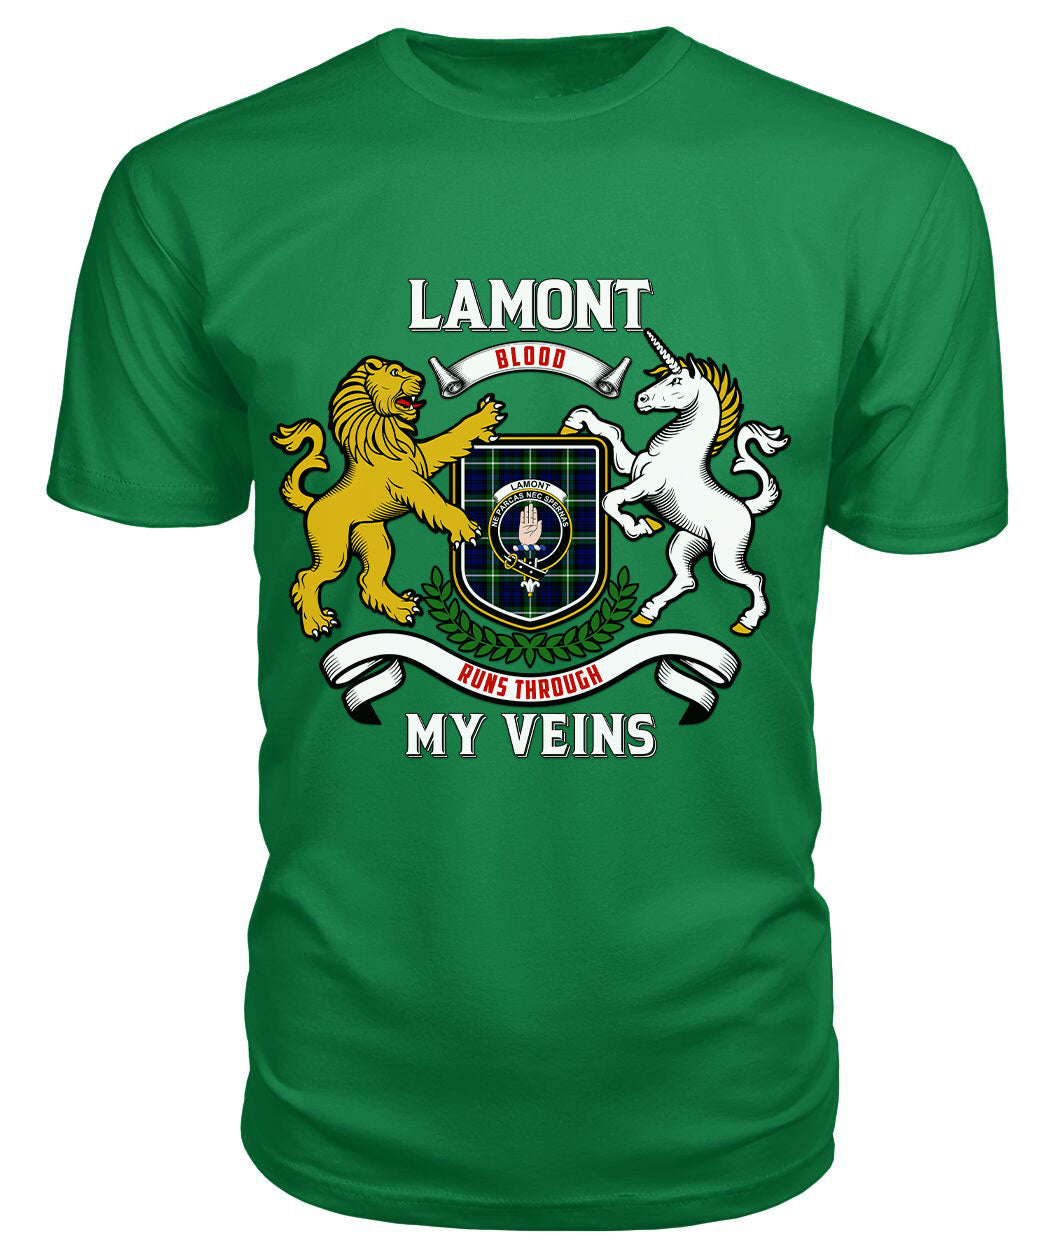 Lamont Modern Tartan Crest 2D T-shirt - Blood Runs Through My Veins Style